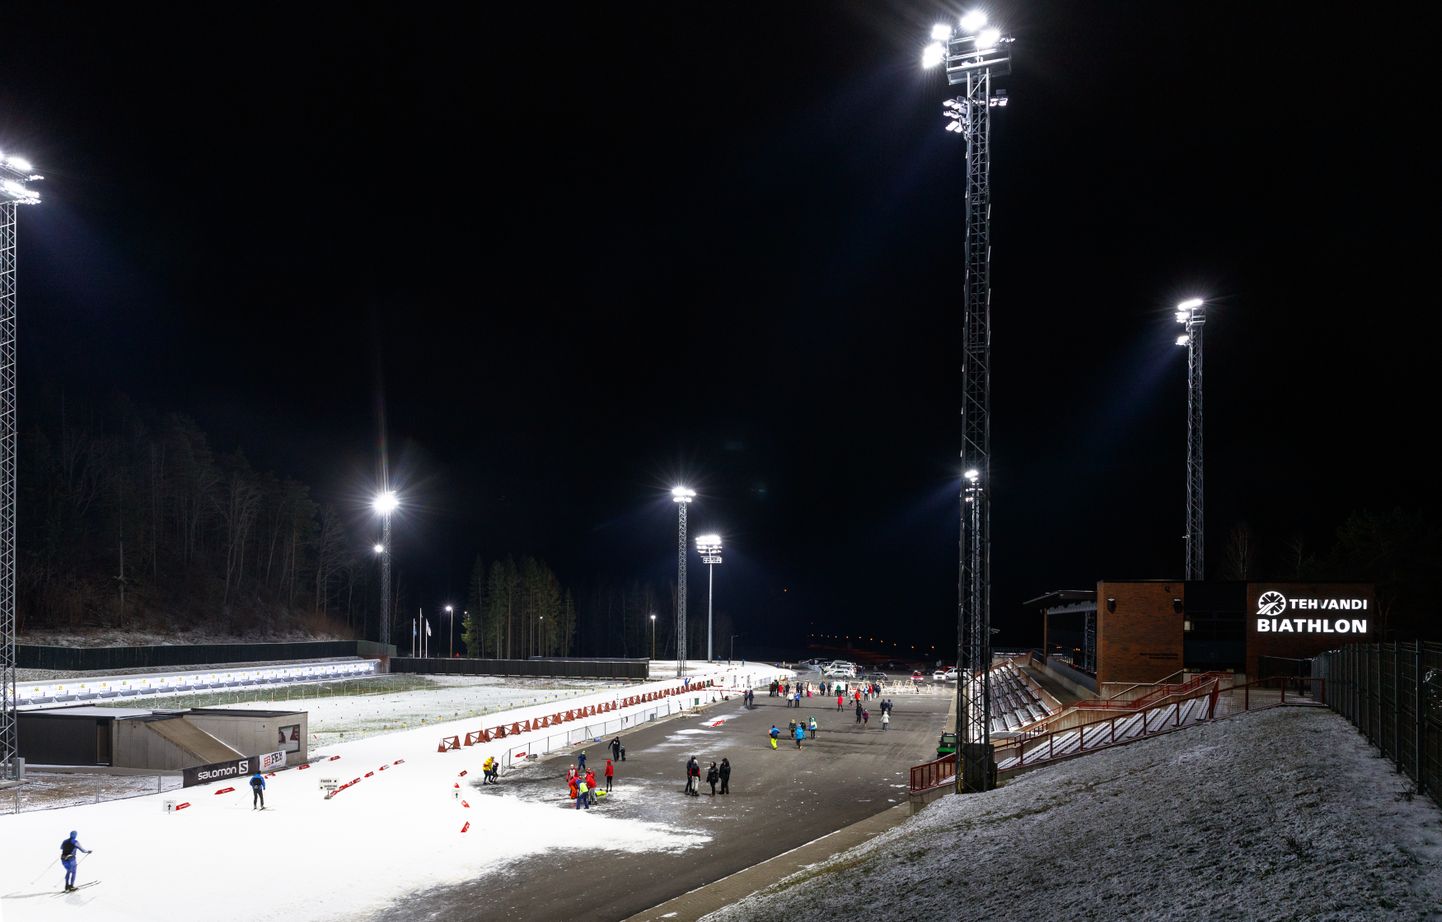 Eesti meistrivõistlused laskesuusatamises. Kuna rekonstrueeritud valgustus võimaldab nüüd võistlusi läbi viia ka pimedal ajal, siis oli ka Eesti meistrivõistluste sprindidistants kavas õhtupoolikul.